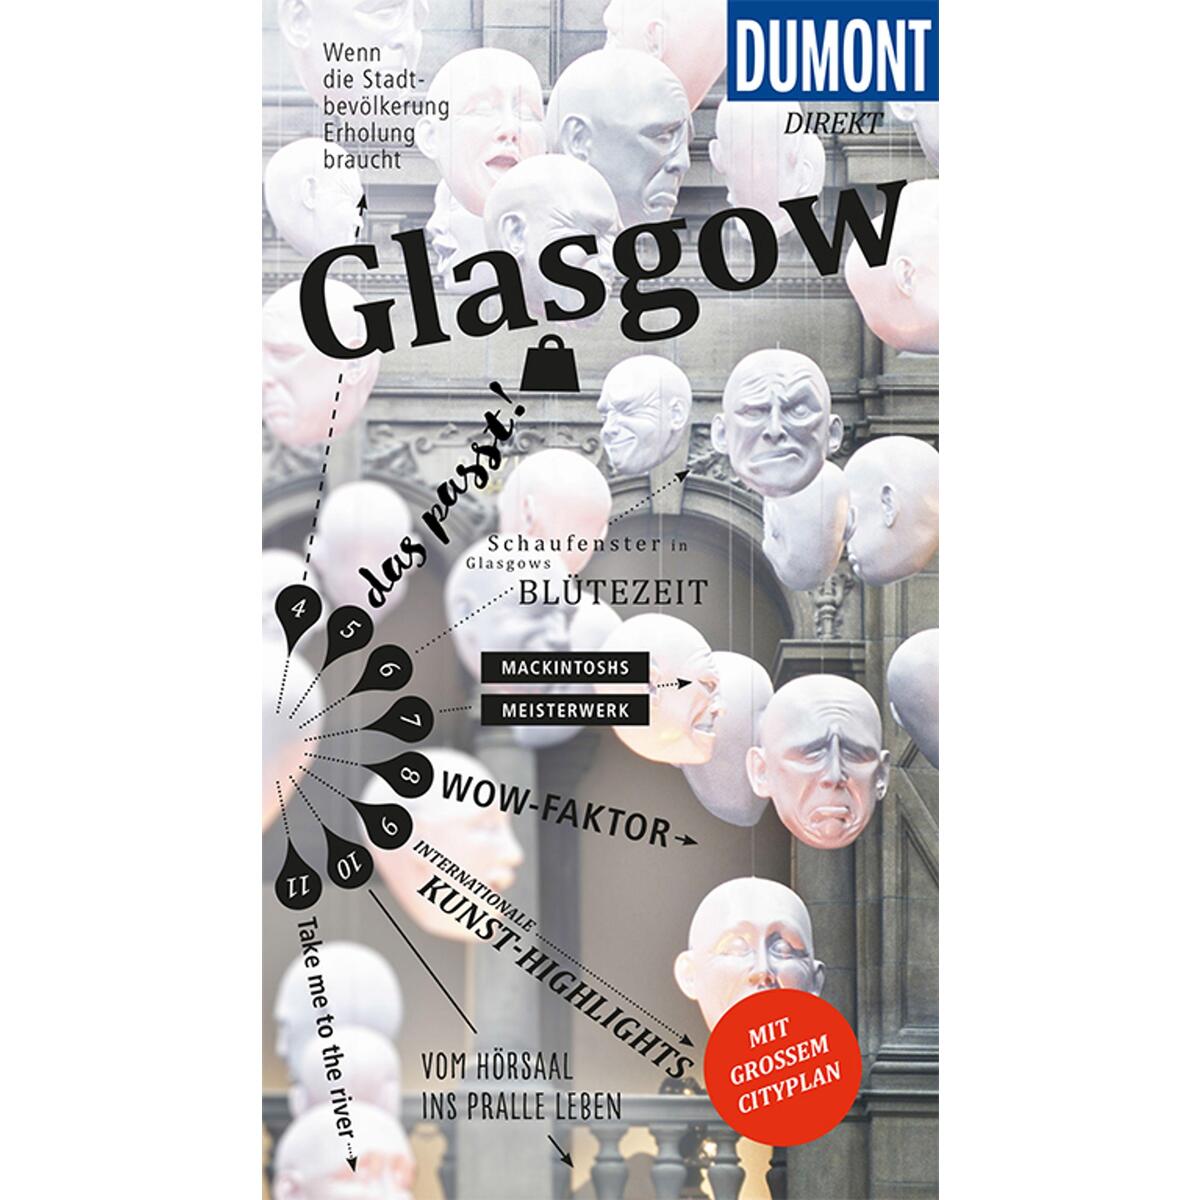 DuMont direkt Reiseführer Glasgow von Dumont Reise Vlg GmbH + C